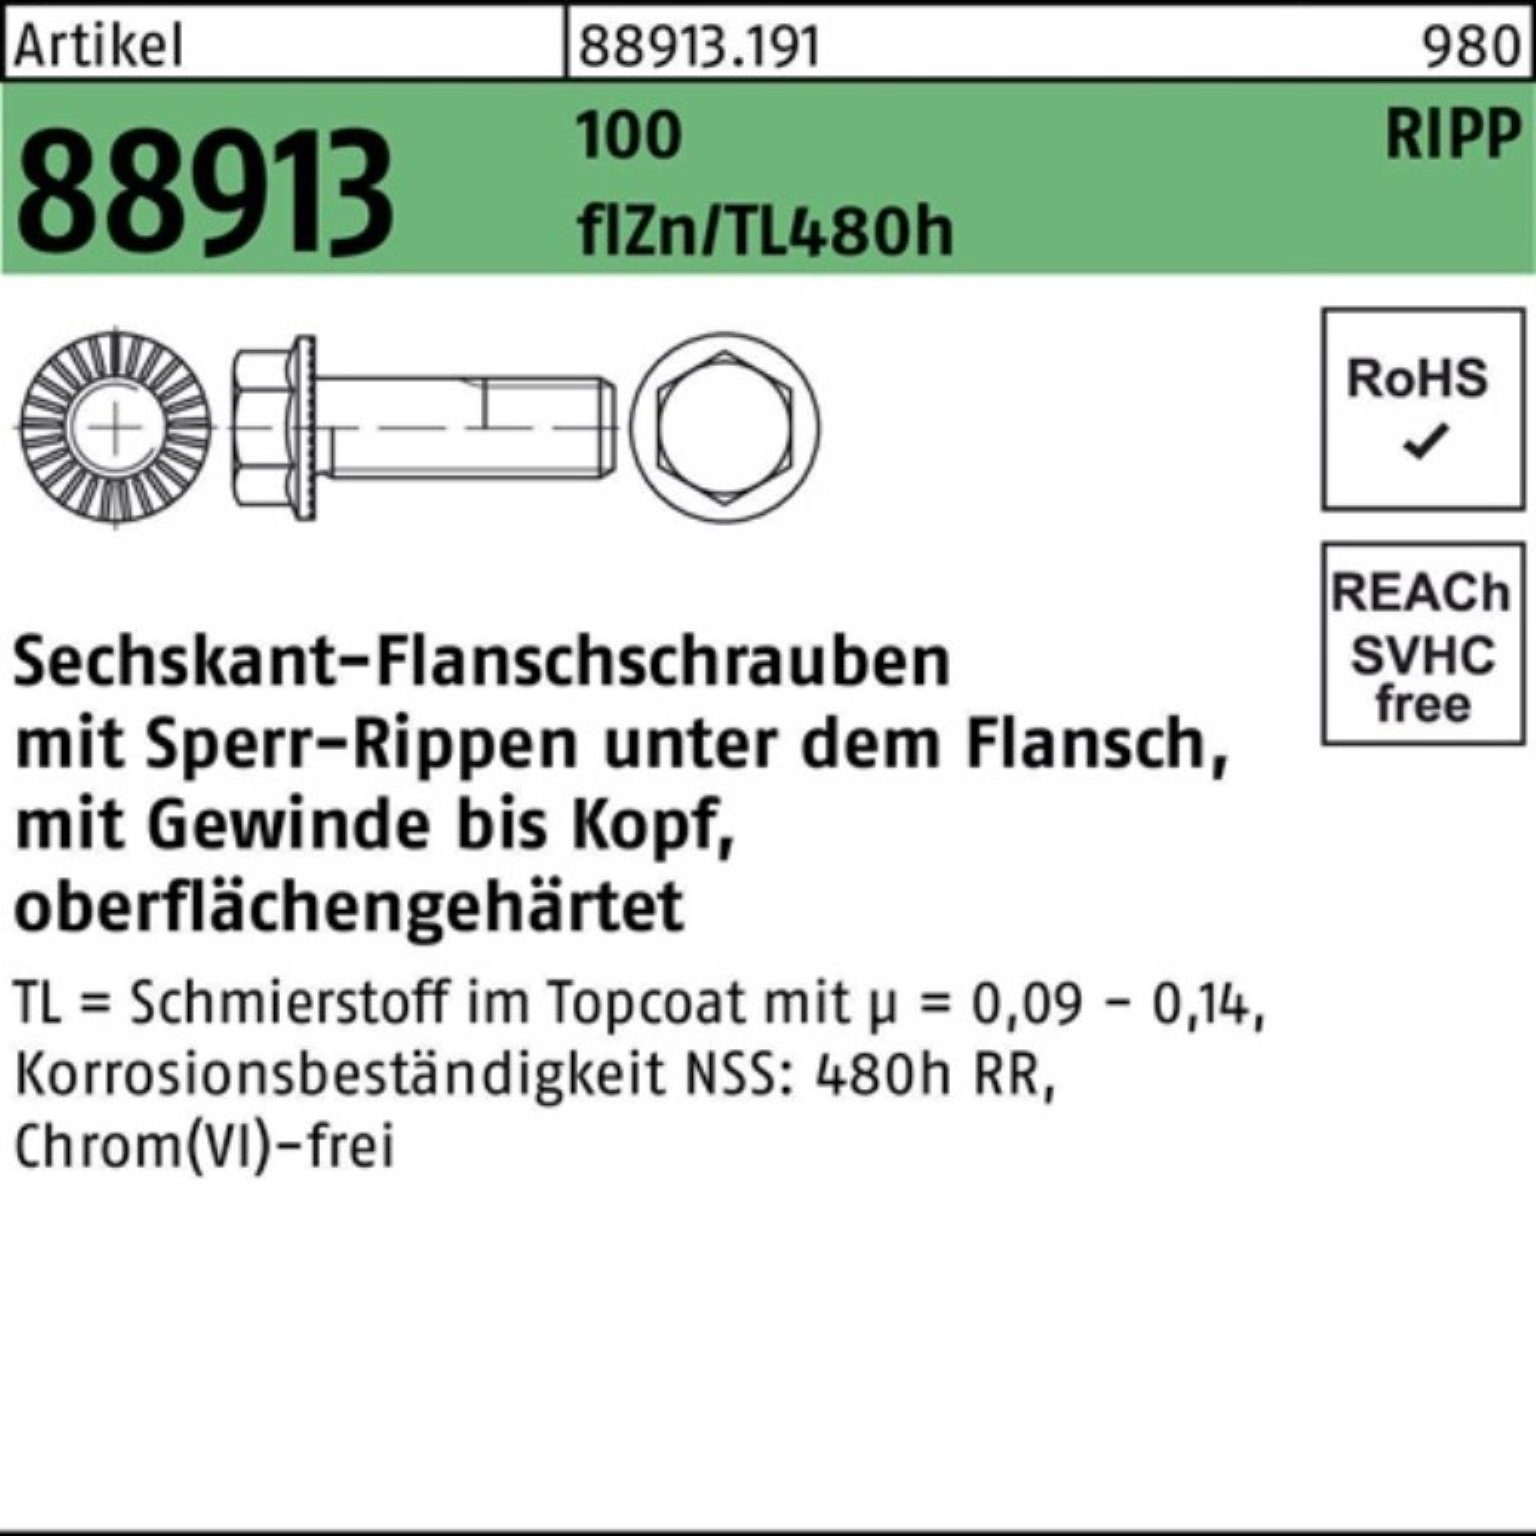 Reyher Schraube 100er Sechskantflanschschraube R Pack Sperr-Ripp f M10x40 VG 100 88913